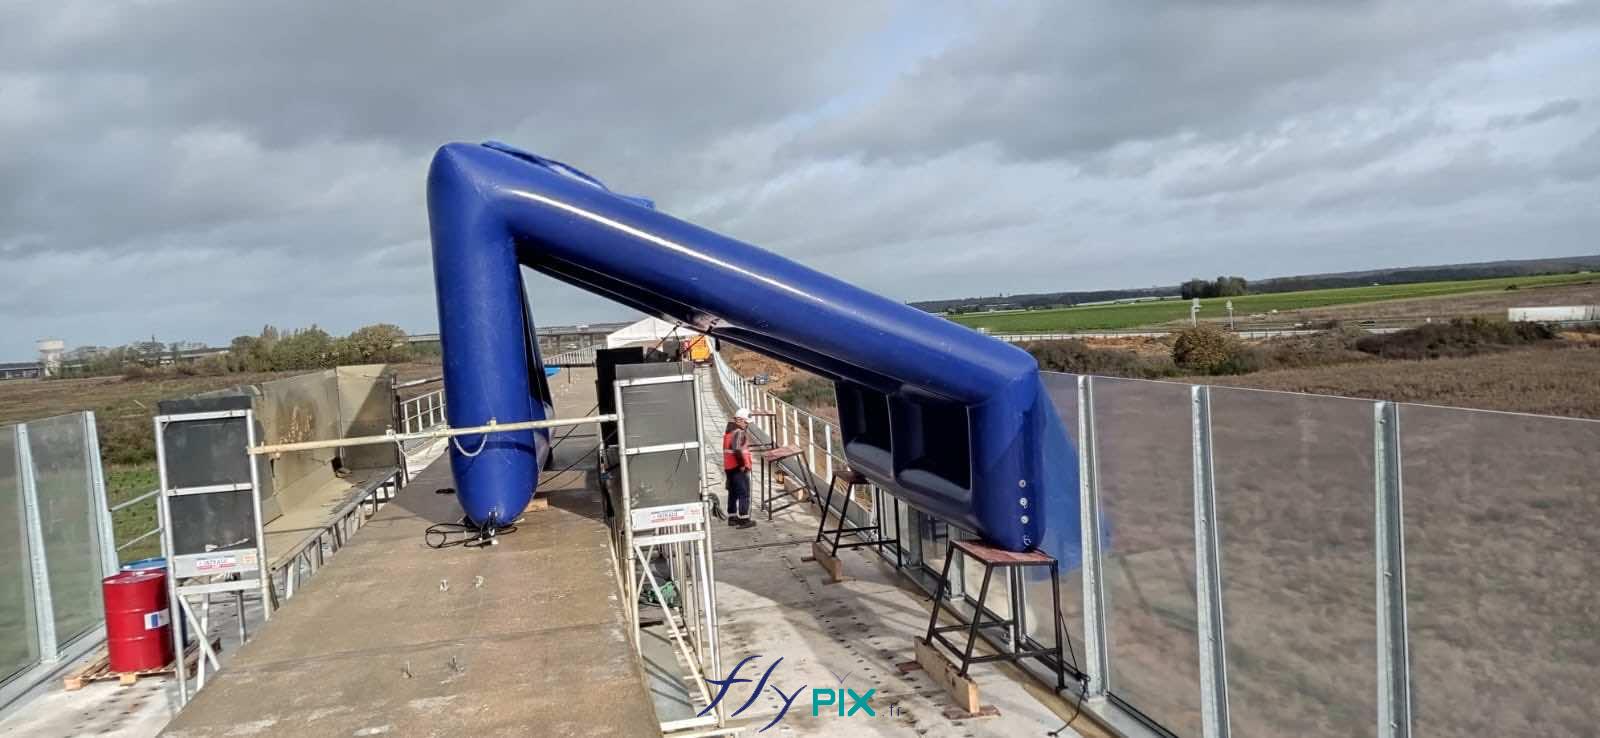 FlyPix abri tente gonflable air captif ventile pompe turbine enveloppe pvc 045 060mm chantier viaduc EUROVIA 3